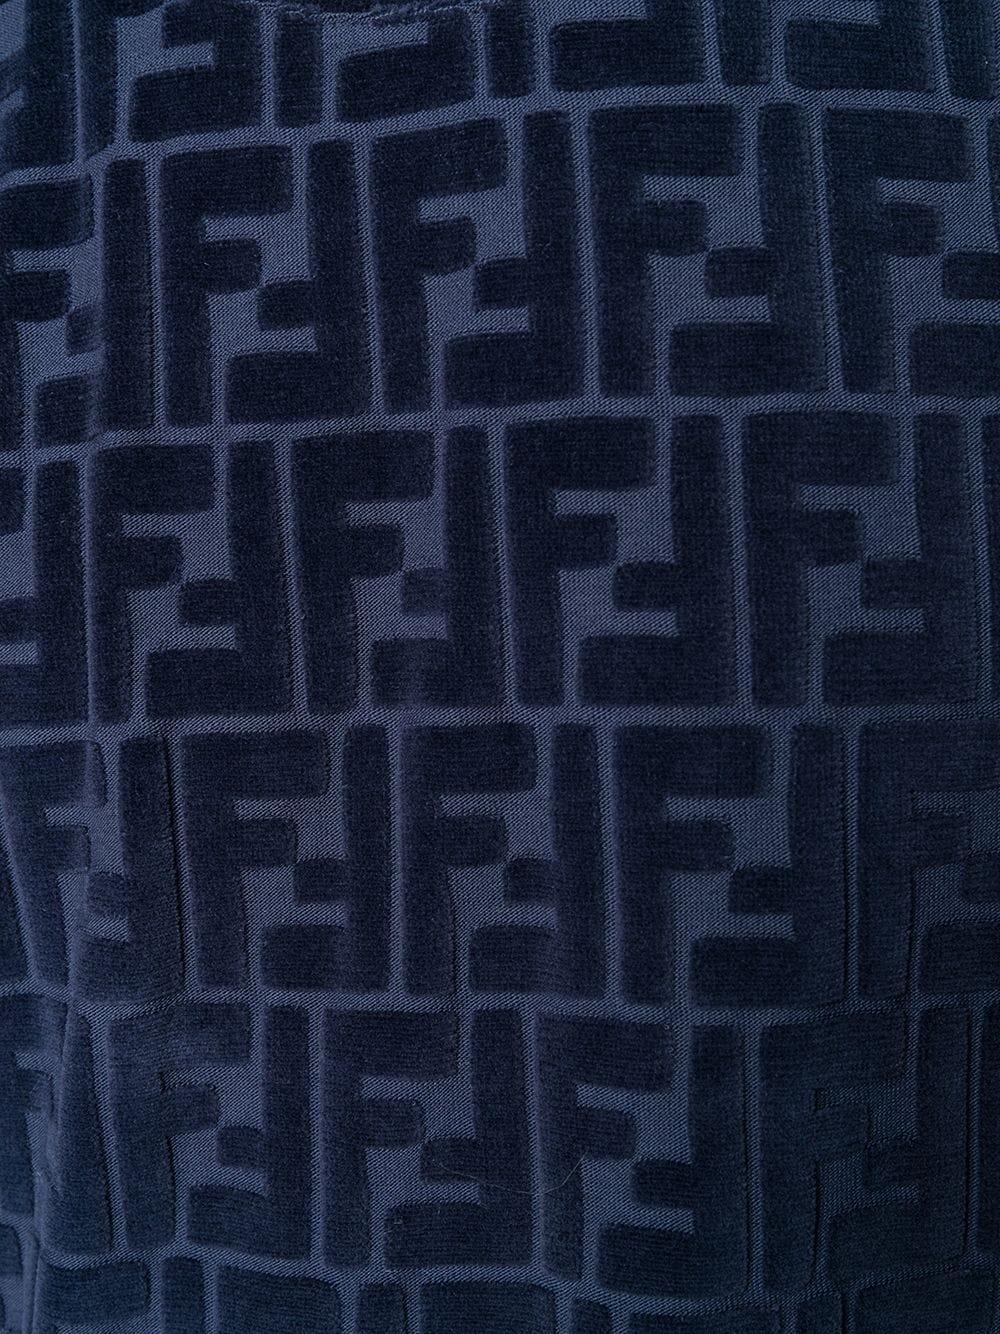 respekt Modstand Autonomi Fendi Velvet Monogram T-shirt in Blue for Men - Lyst